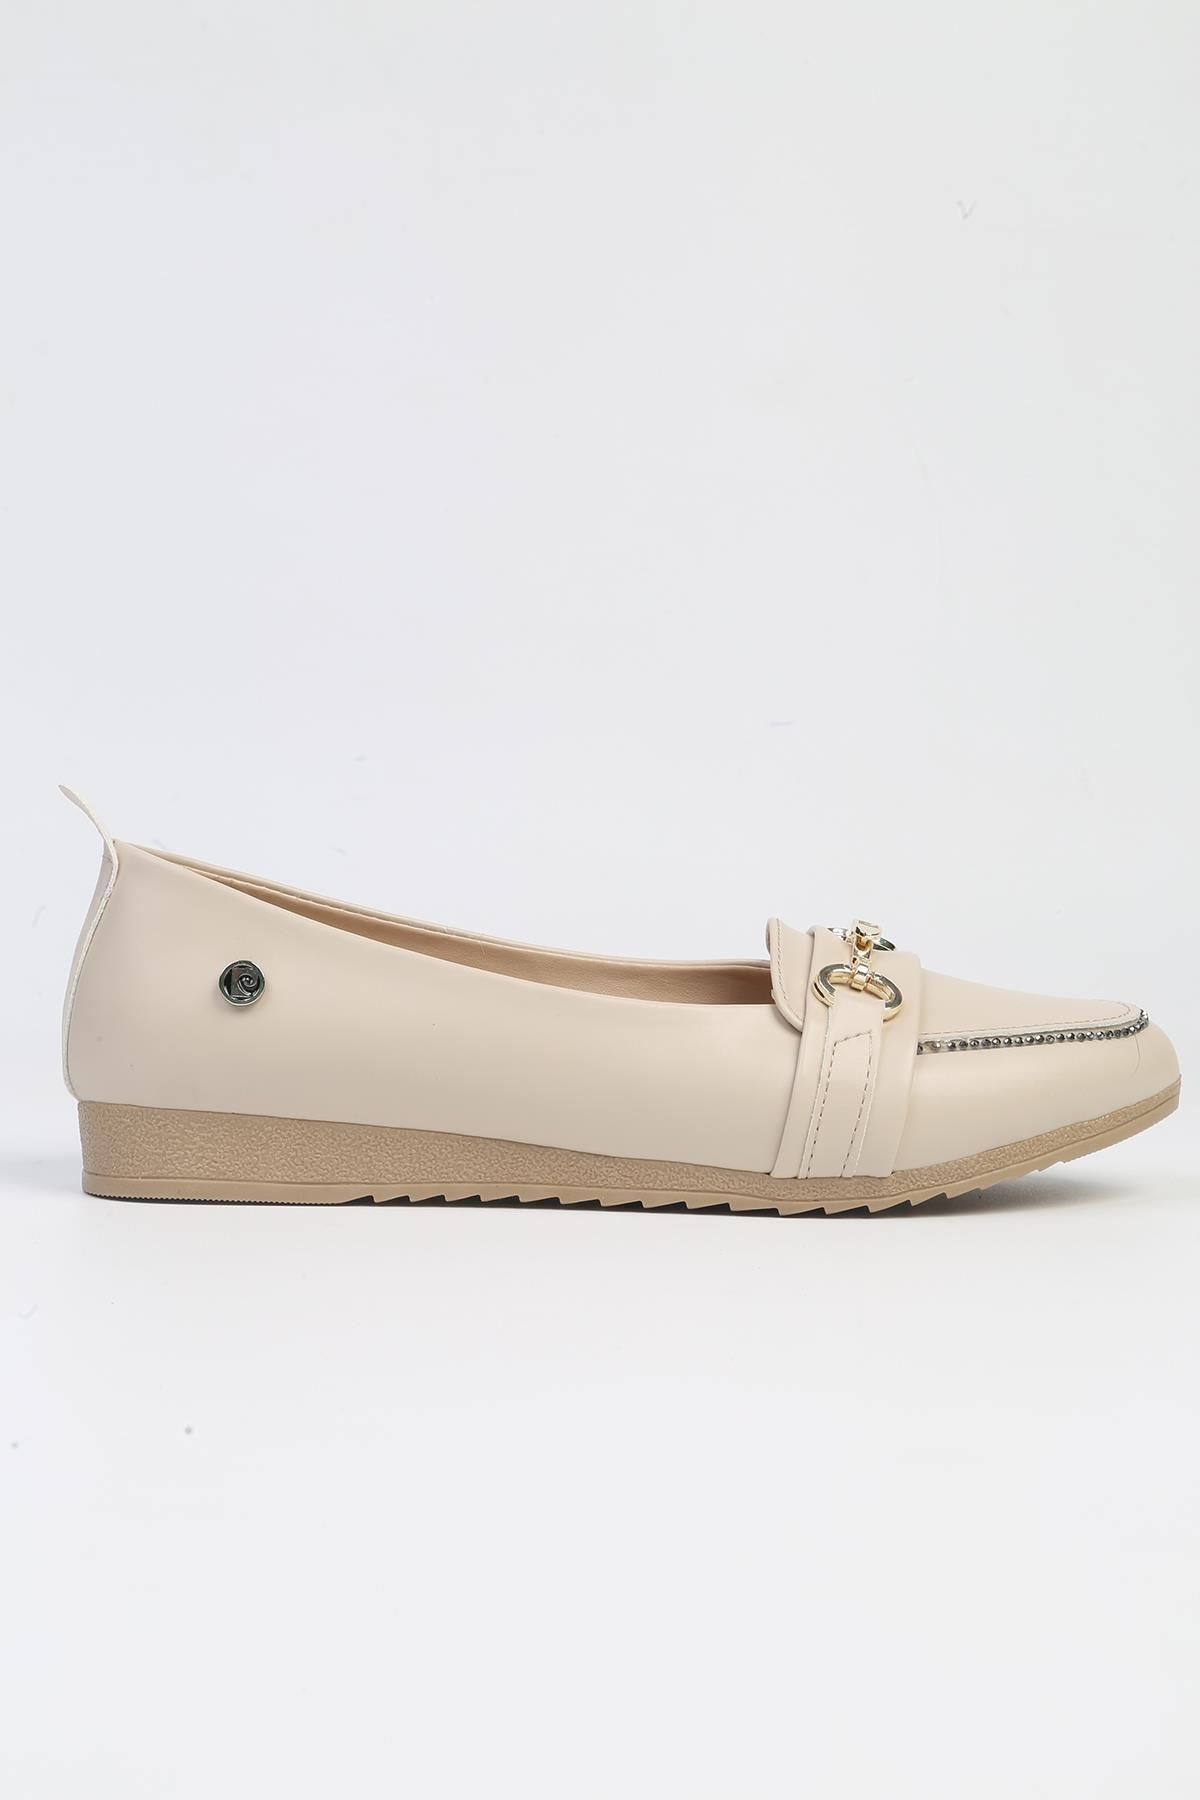 Pierre Cardin ® | PC-53016- 3962 Bej-Kadın Günlük Ayakkabı